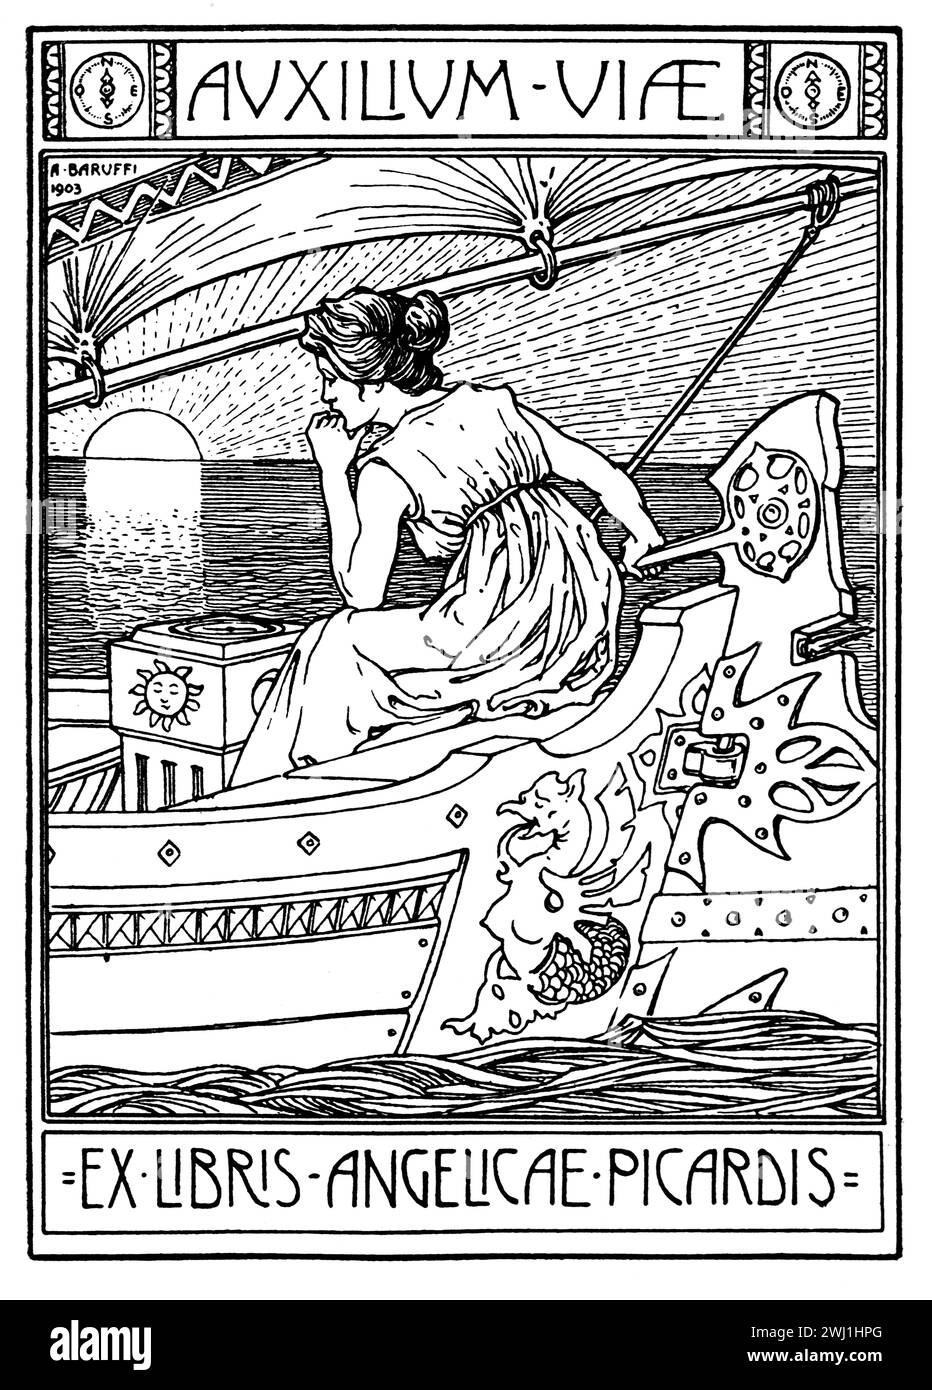 1903 Buch Platte auxilium viae, Hilfe ist unterwegs, Illustration für Angelicae, Picardis von Bolognese, Grafiker Alfredo Baruffi Stockfoto